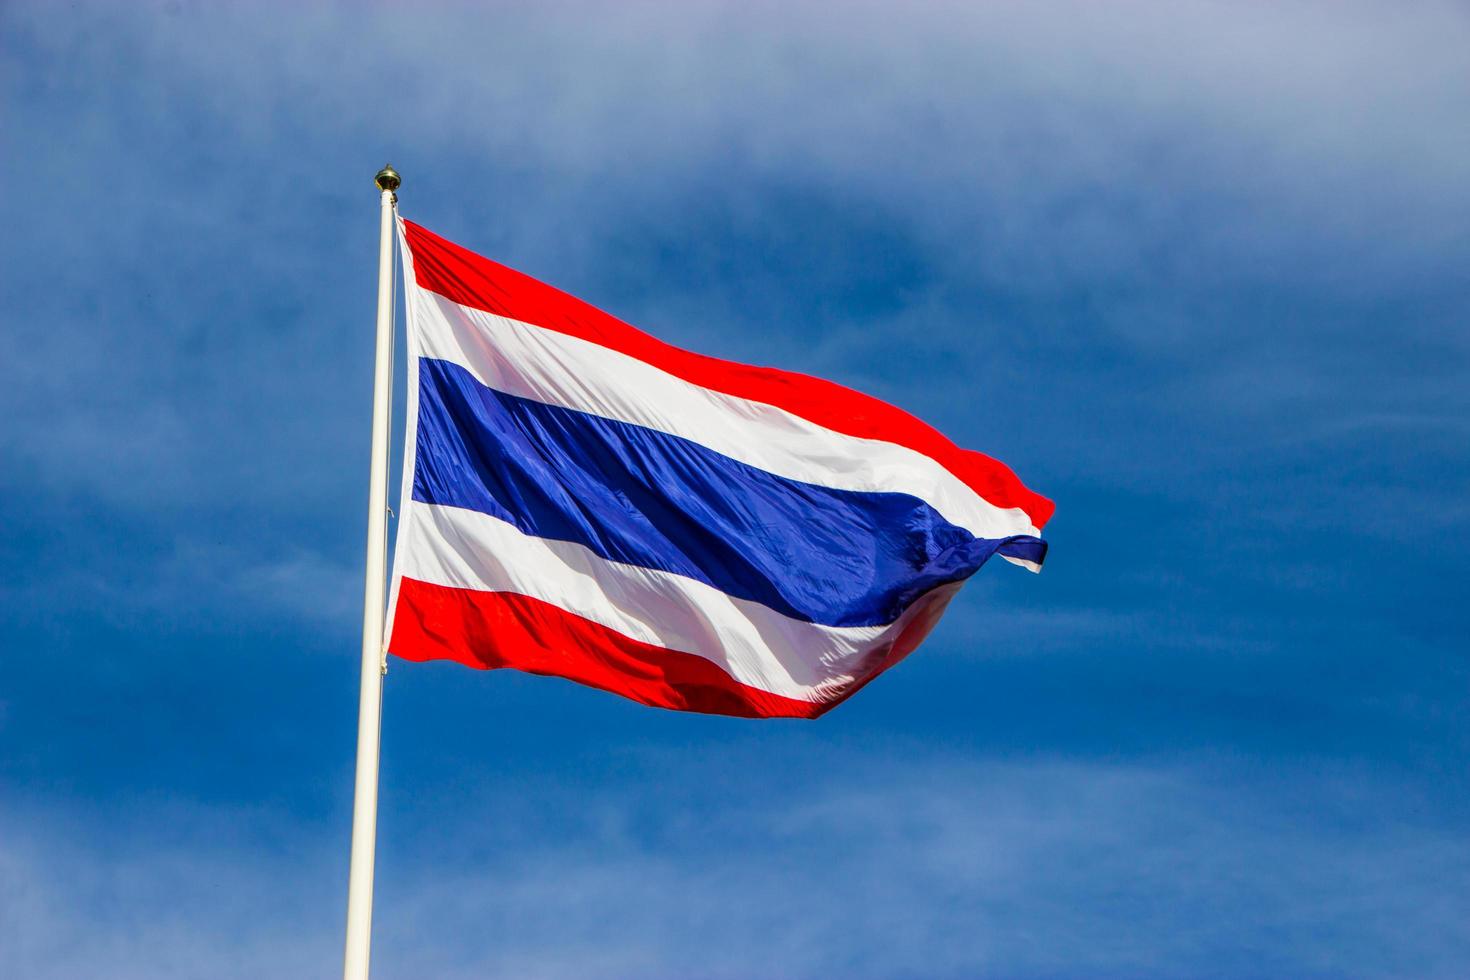 Flagge von Thailand foto